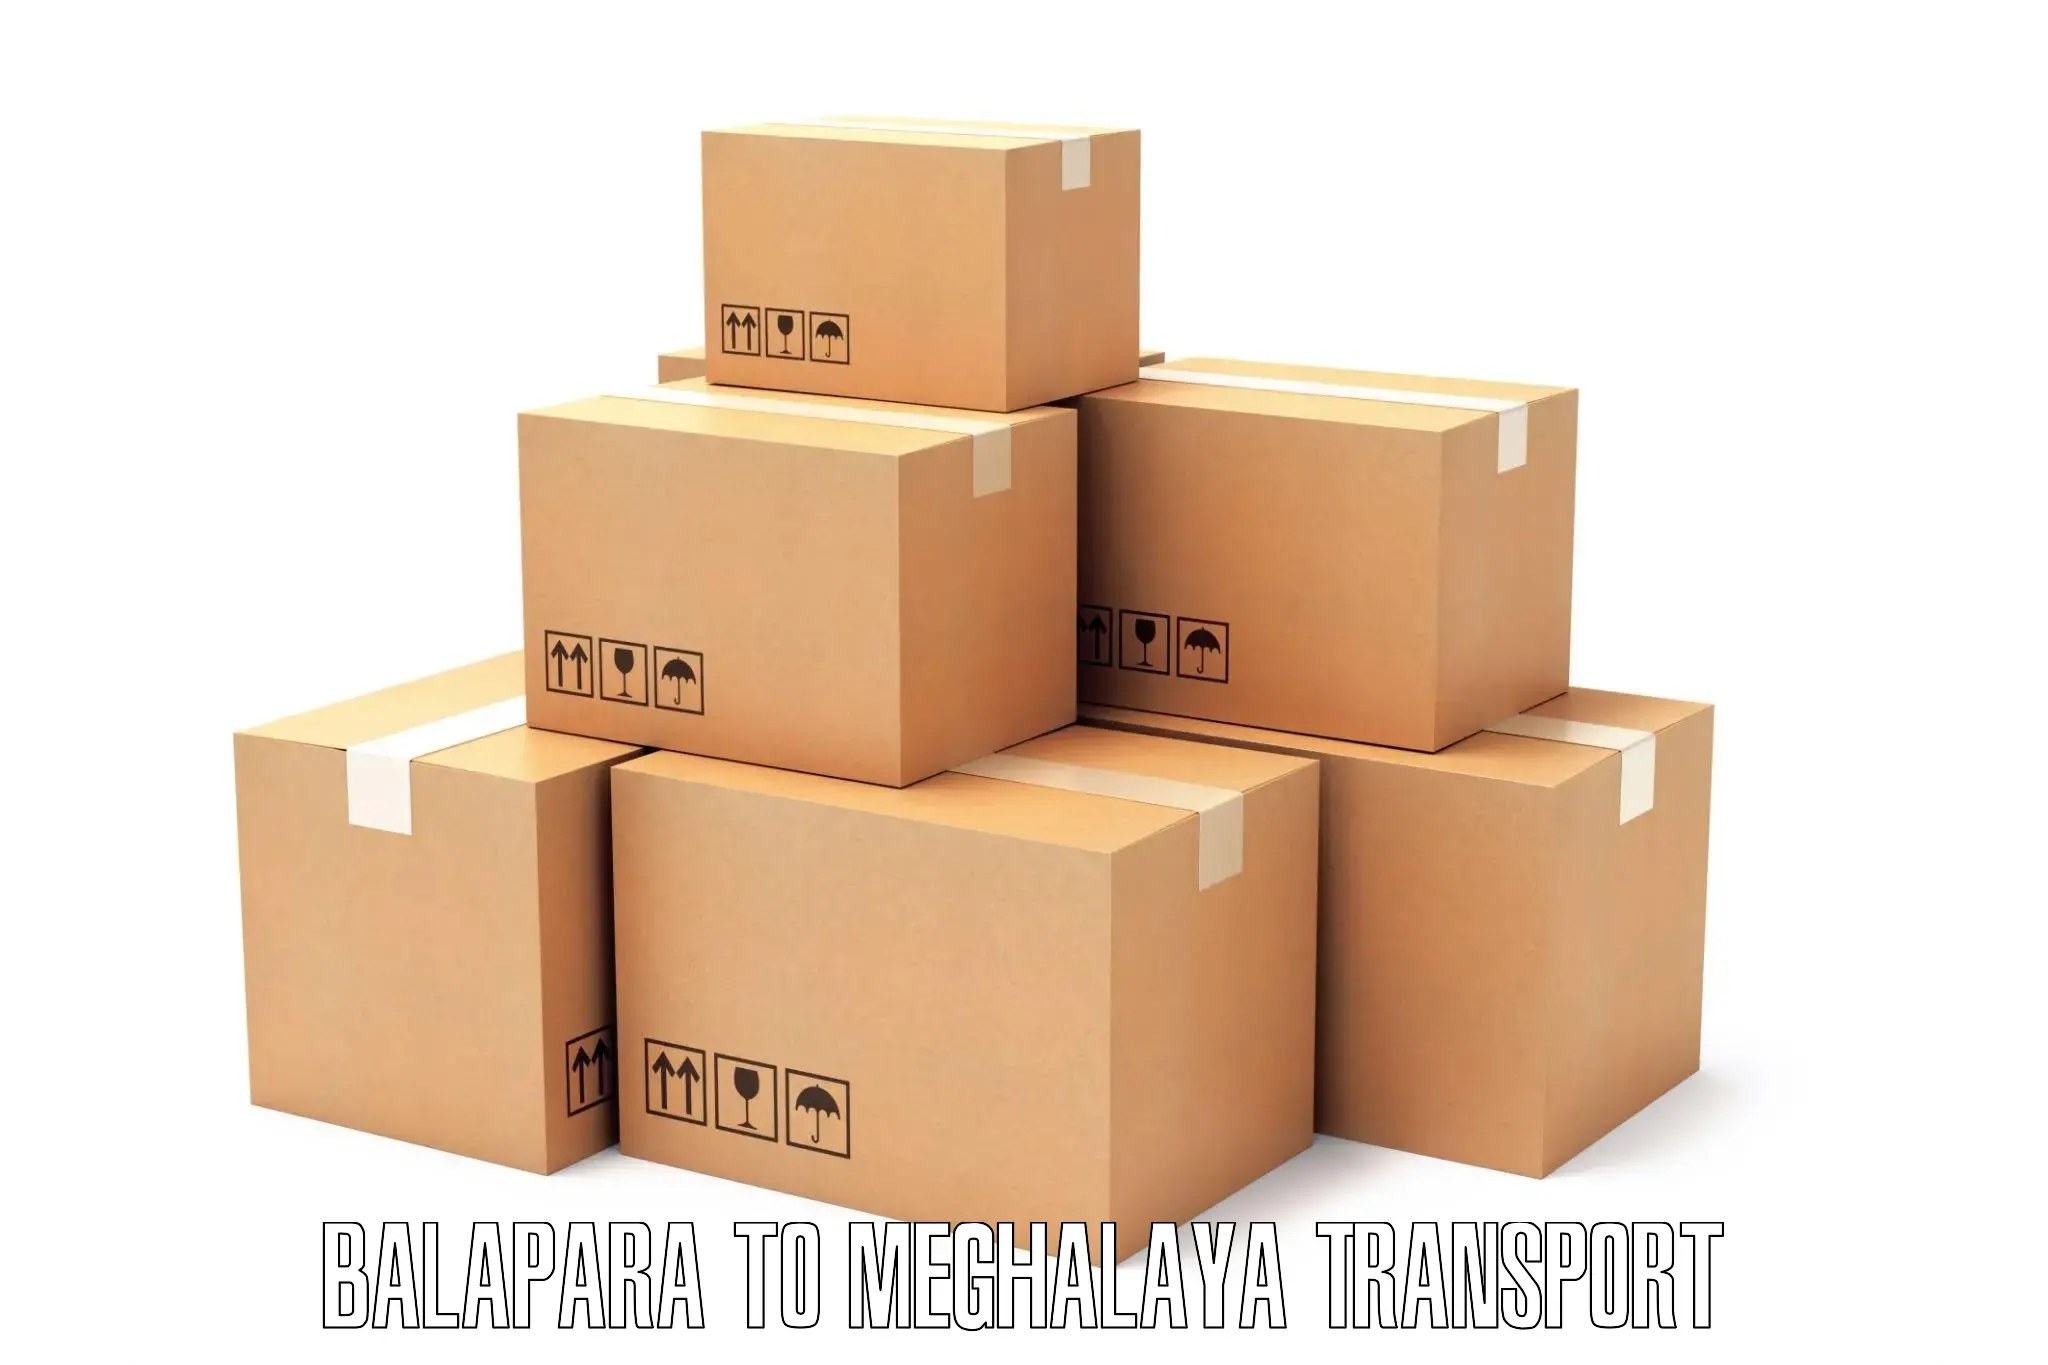 Cargo transport services Balapara to Nongstoin